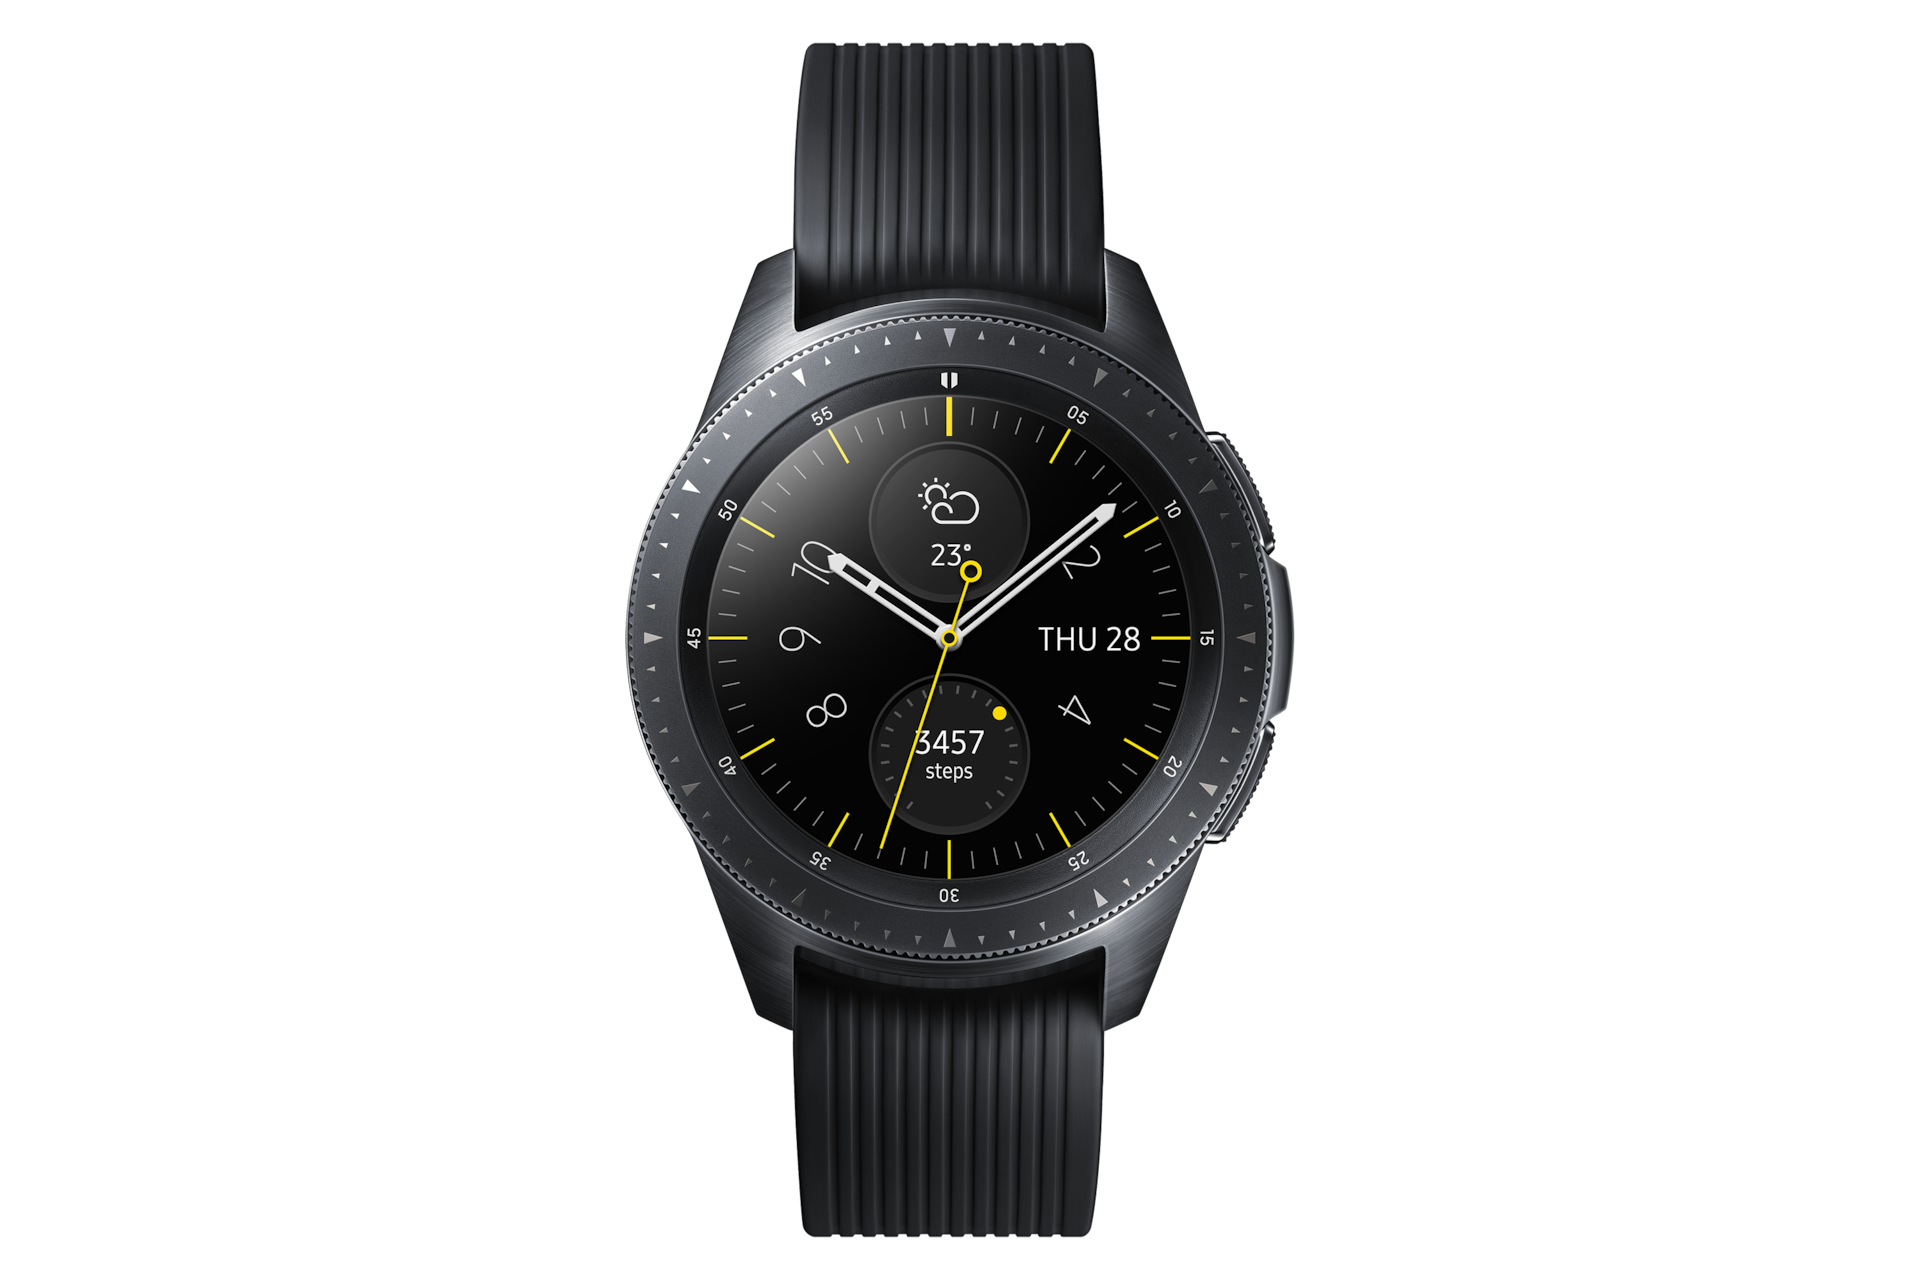 galaxy watch 4.2 cm